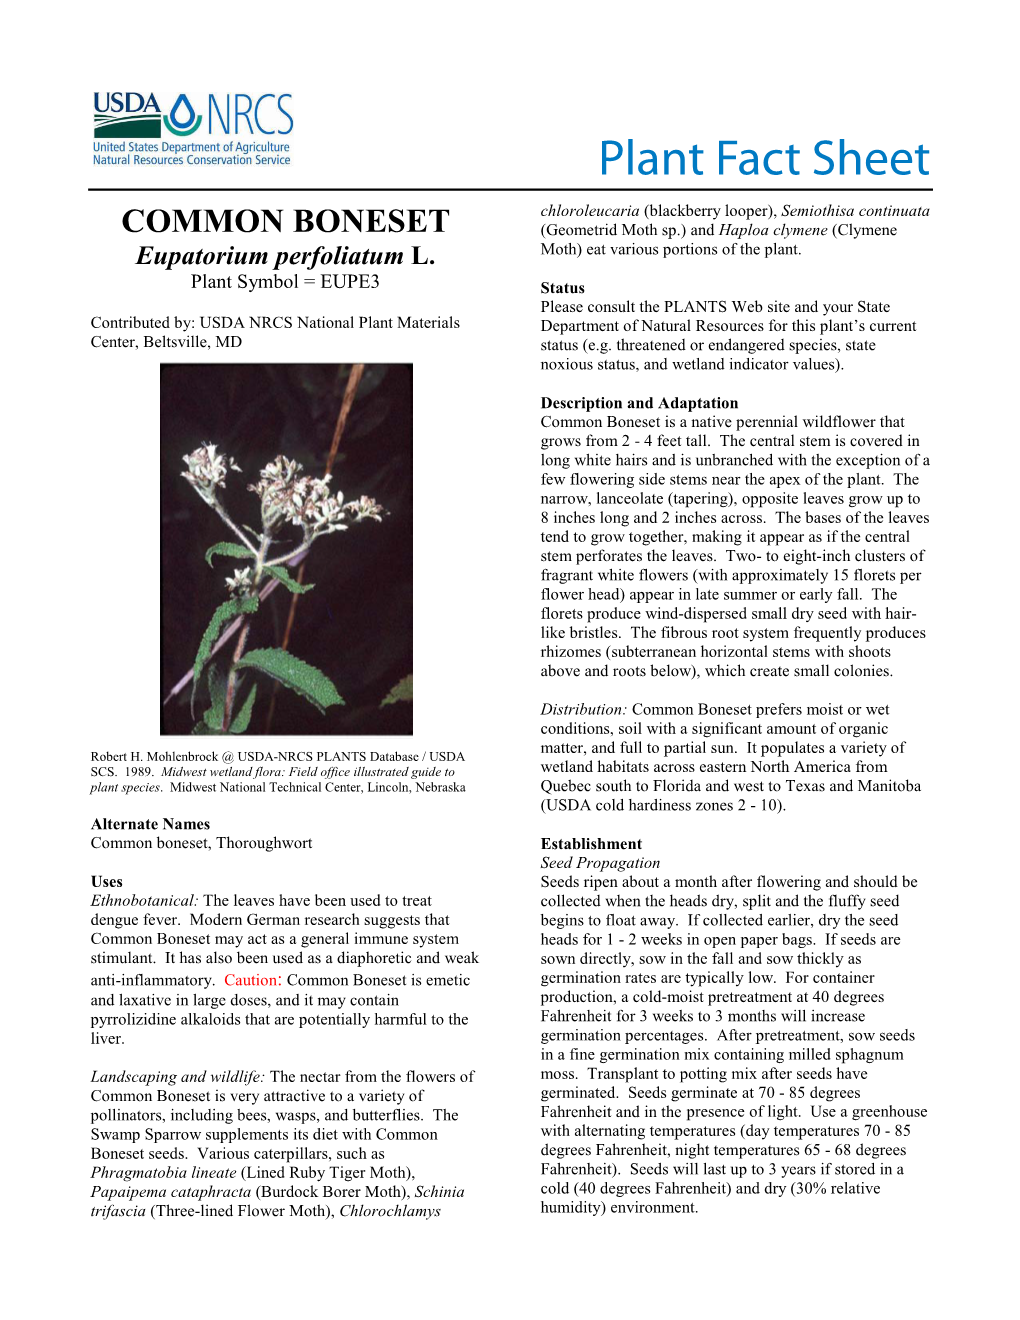 Common Boneset (Eupatorium Perfoliatum)